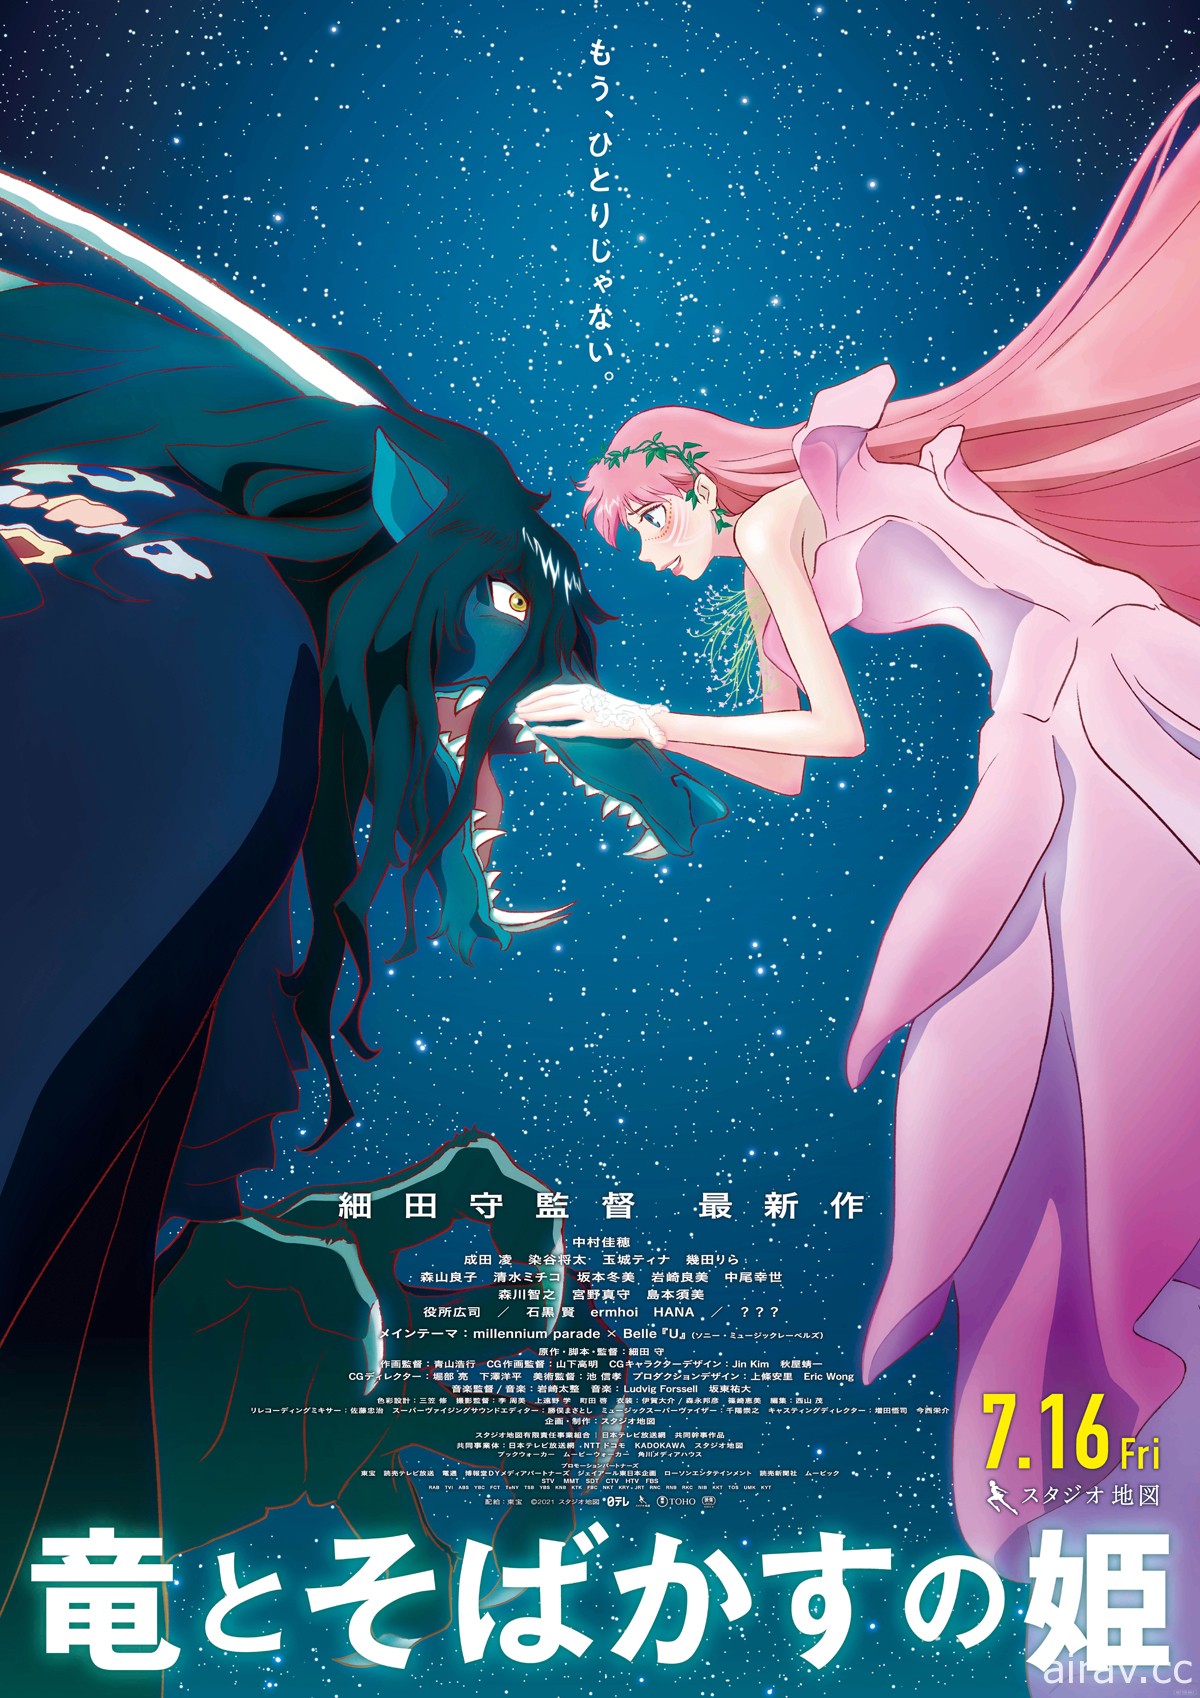 第 45 屆日本電影學院獎發表優秀賞動畫名單《咒術》《龍與雀斑公主》《福音戰士》等作